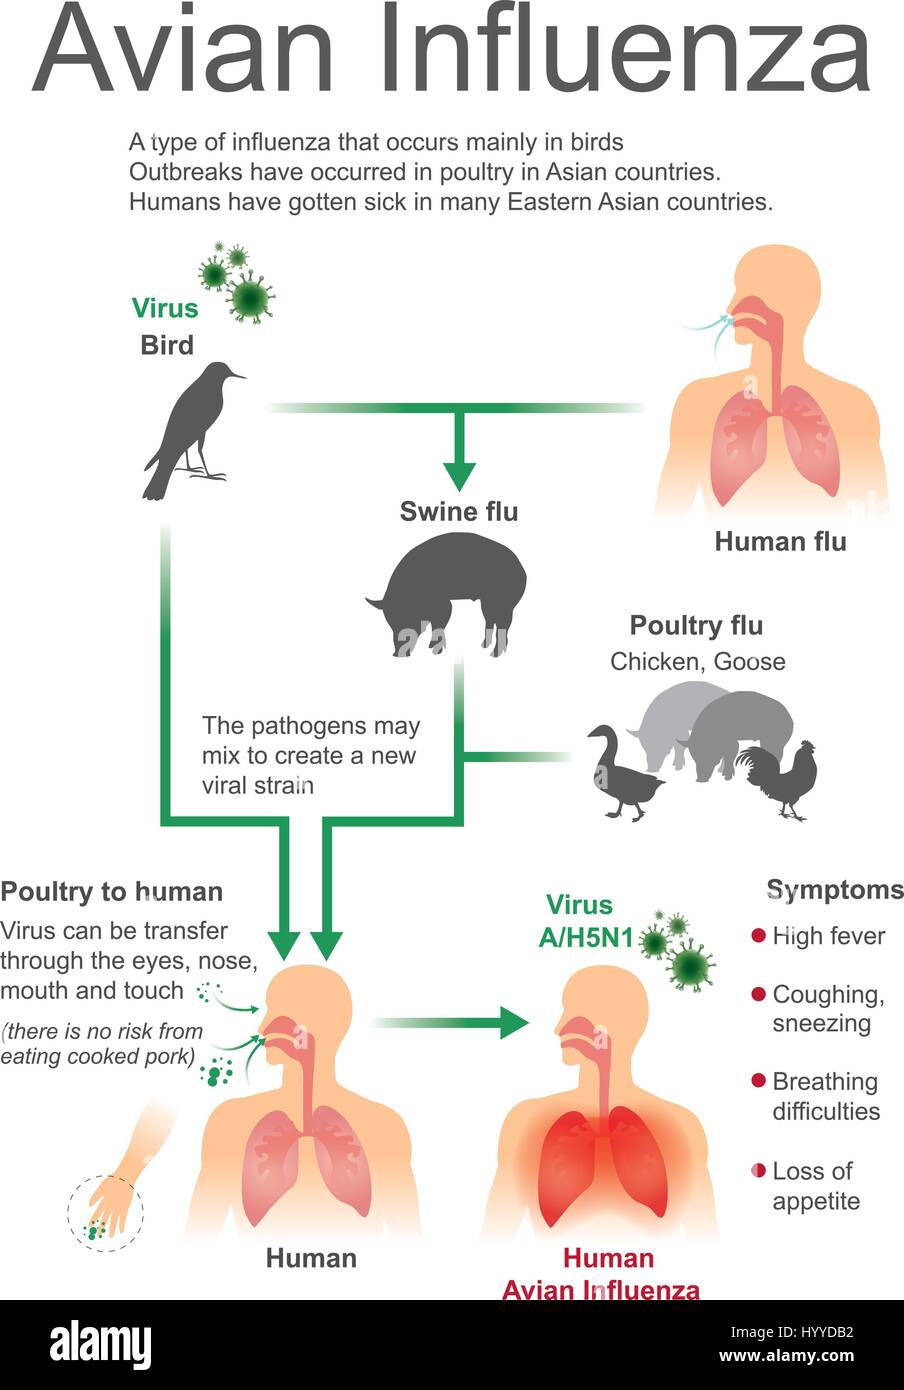 Type de grippe qui apparaît principalement chez les oiseaux, les éclosions sont survenues chez les volailles dans les pays asiatiques, les droits de l'avoir été malade dans de nombreux pays d'Asie de cou Illustration de Vecteur